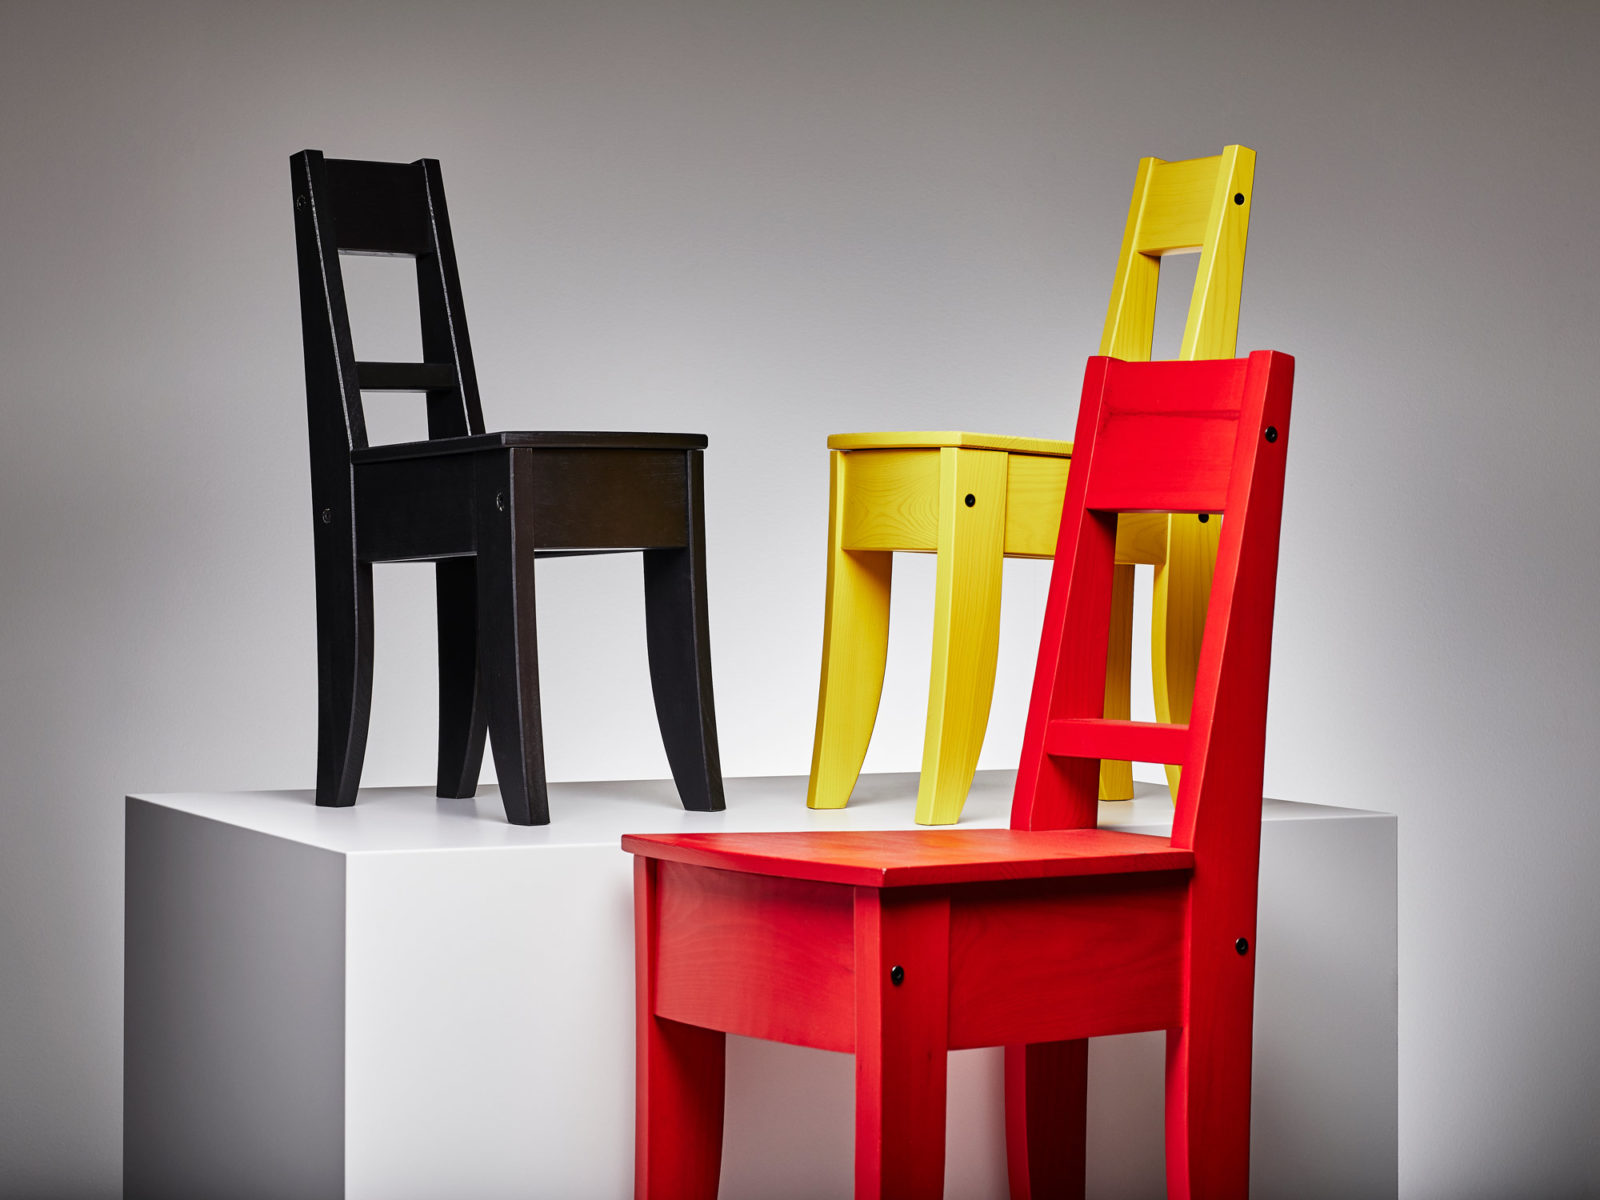 Tre enkla stolar i trä, en svart, en gul och en röd, arrangerade på och bredvid en stor vit kub.